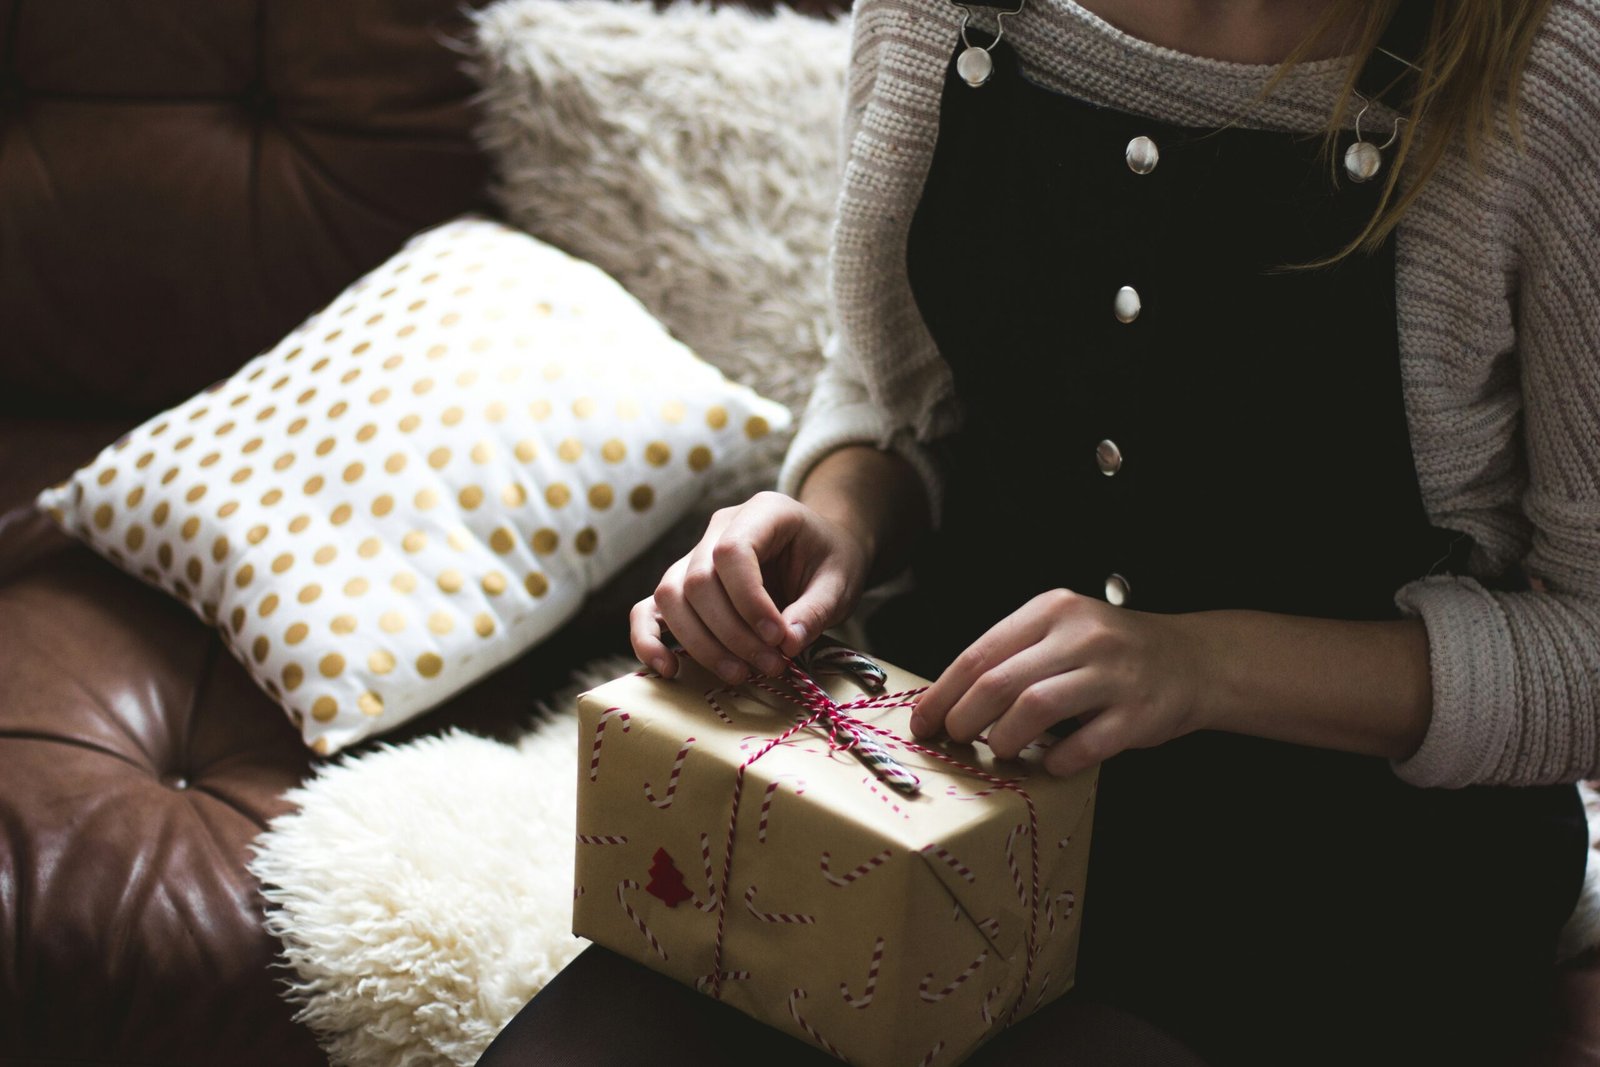 Explore ideas de regalos de último momento para cualquier ocasión y alegrarle el día a alguien con un regalo único y reflexivo.